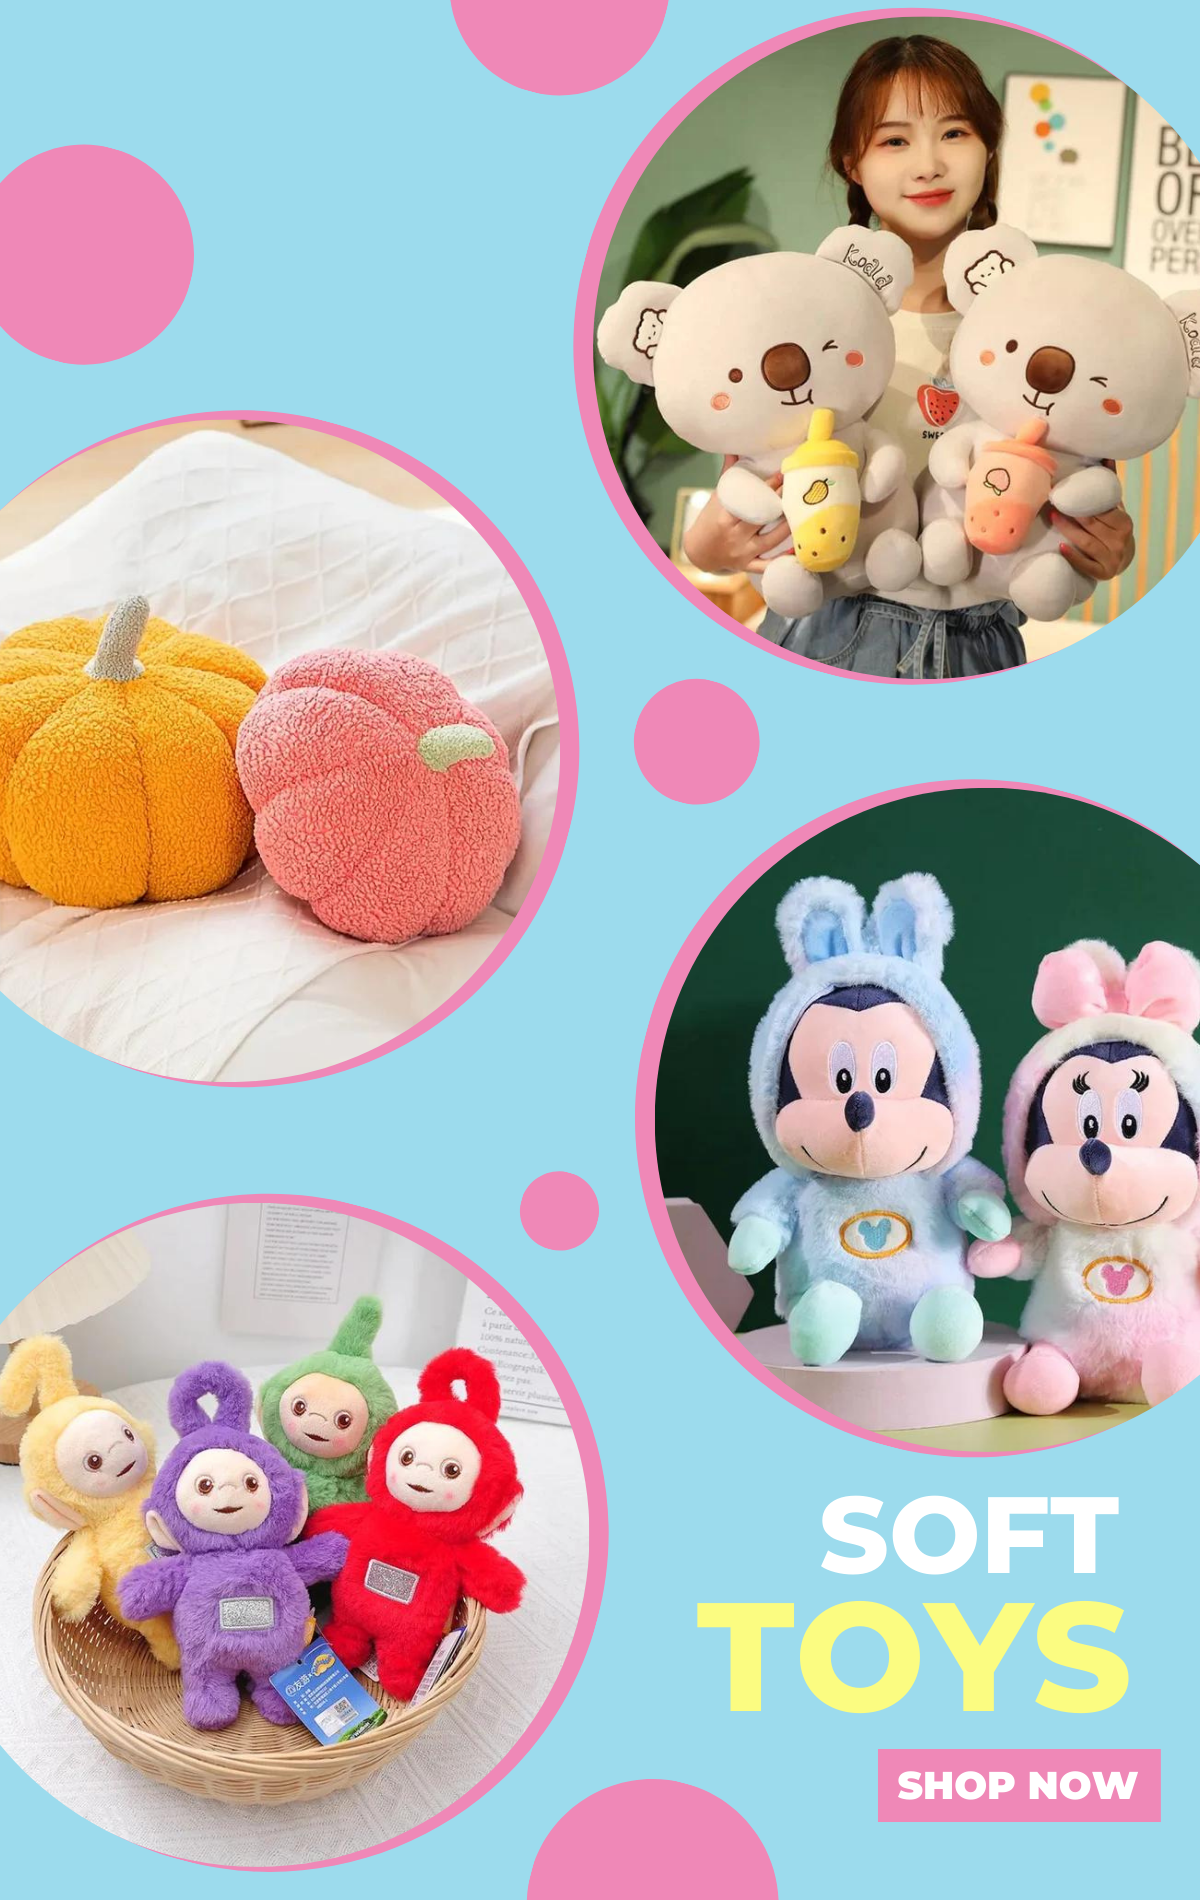 Garten of banban Plush Toys Nabnab Stuffed Soft Toys Doll Kids Birthday  Gifts | eBay